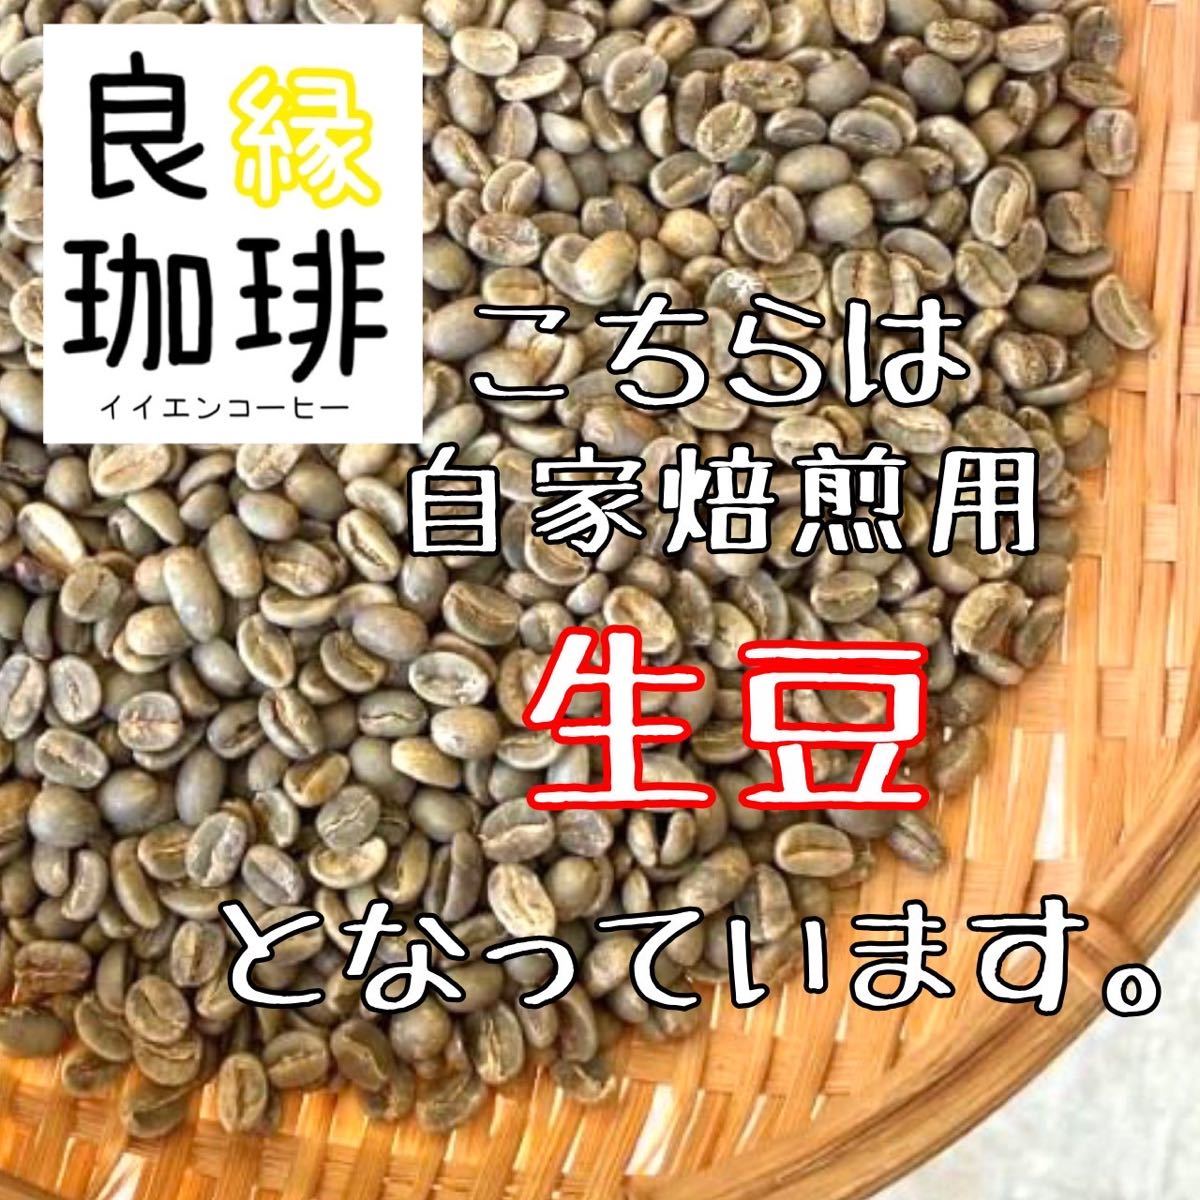 【最安値】生豆 ブラジル クィーンショコラ Qグレード 200g コーヒー豆の画像4